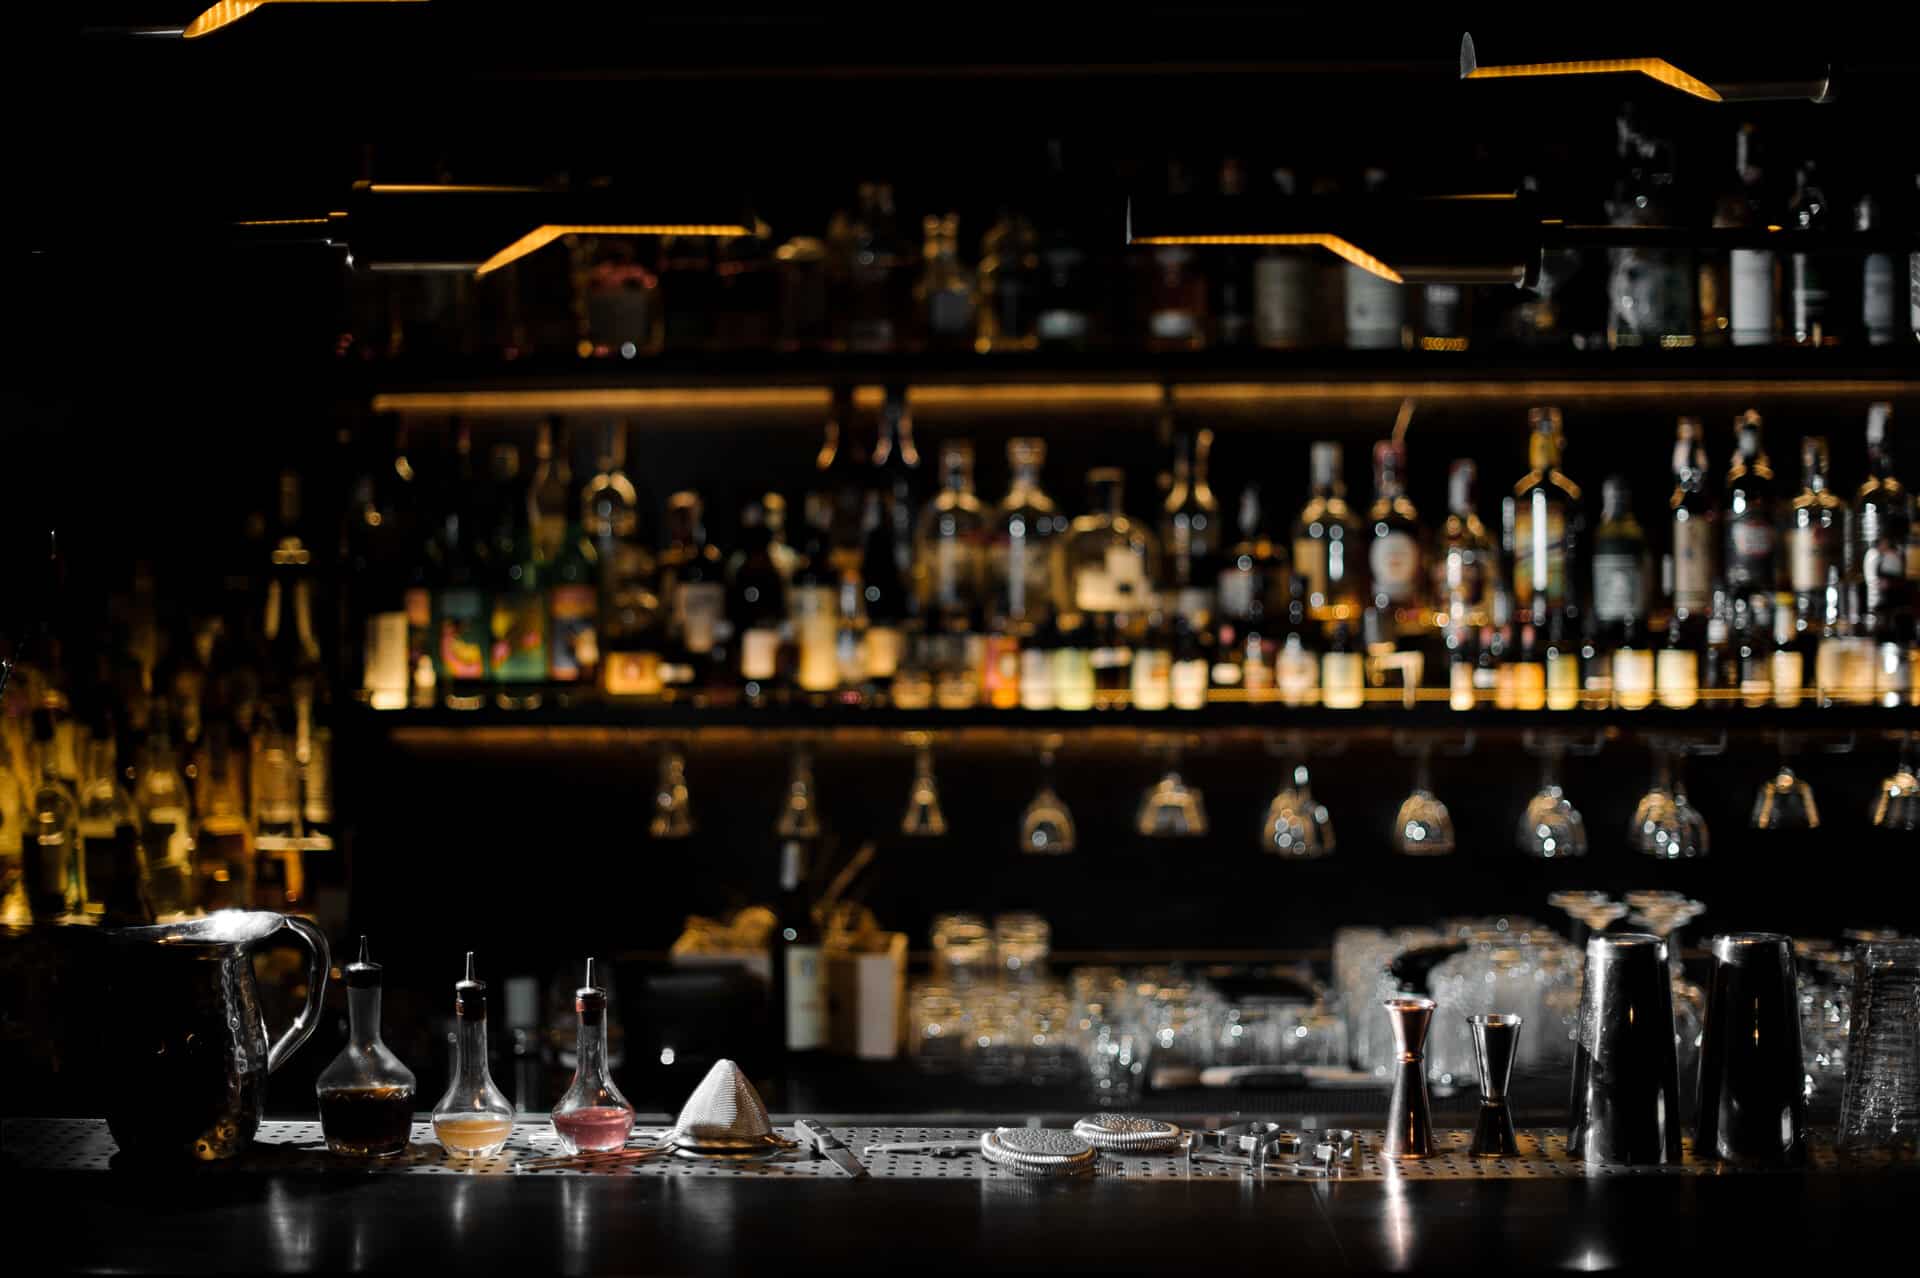 Bartenderequipment auf Tresen vor dunkler beleuchter Bar im Hintergrund